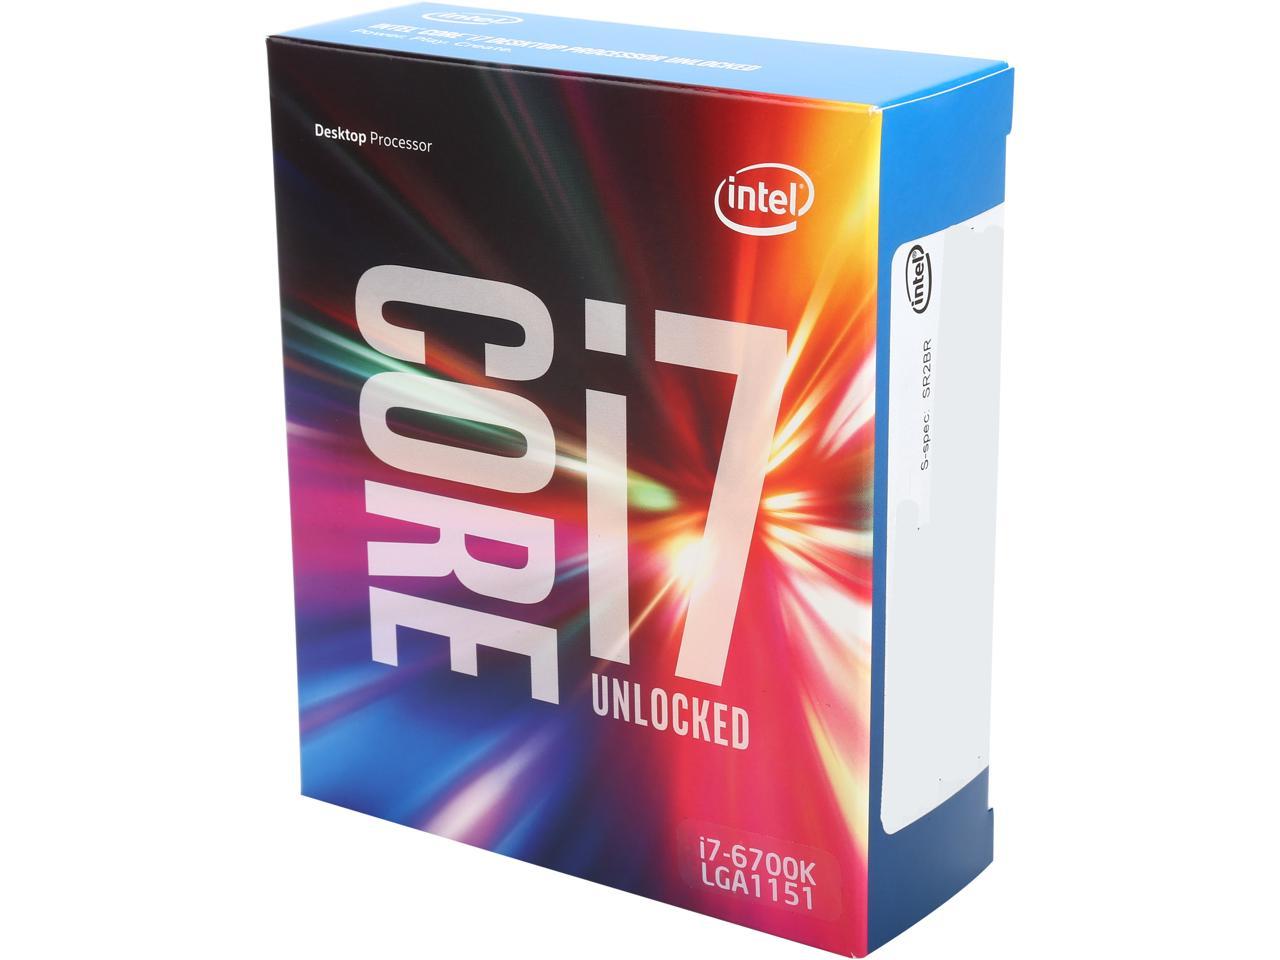 Avonturier Ontrouw Gang Intel Core i7-6700K 8M 4.0 GHz LGA 1151 Desktop Processor - Newegg.com